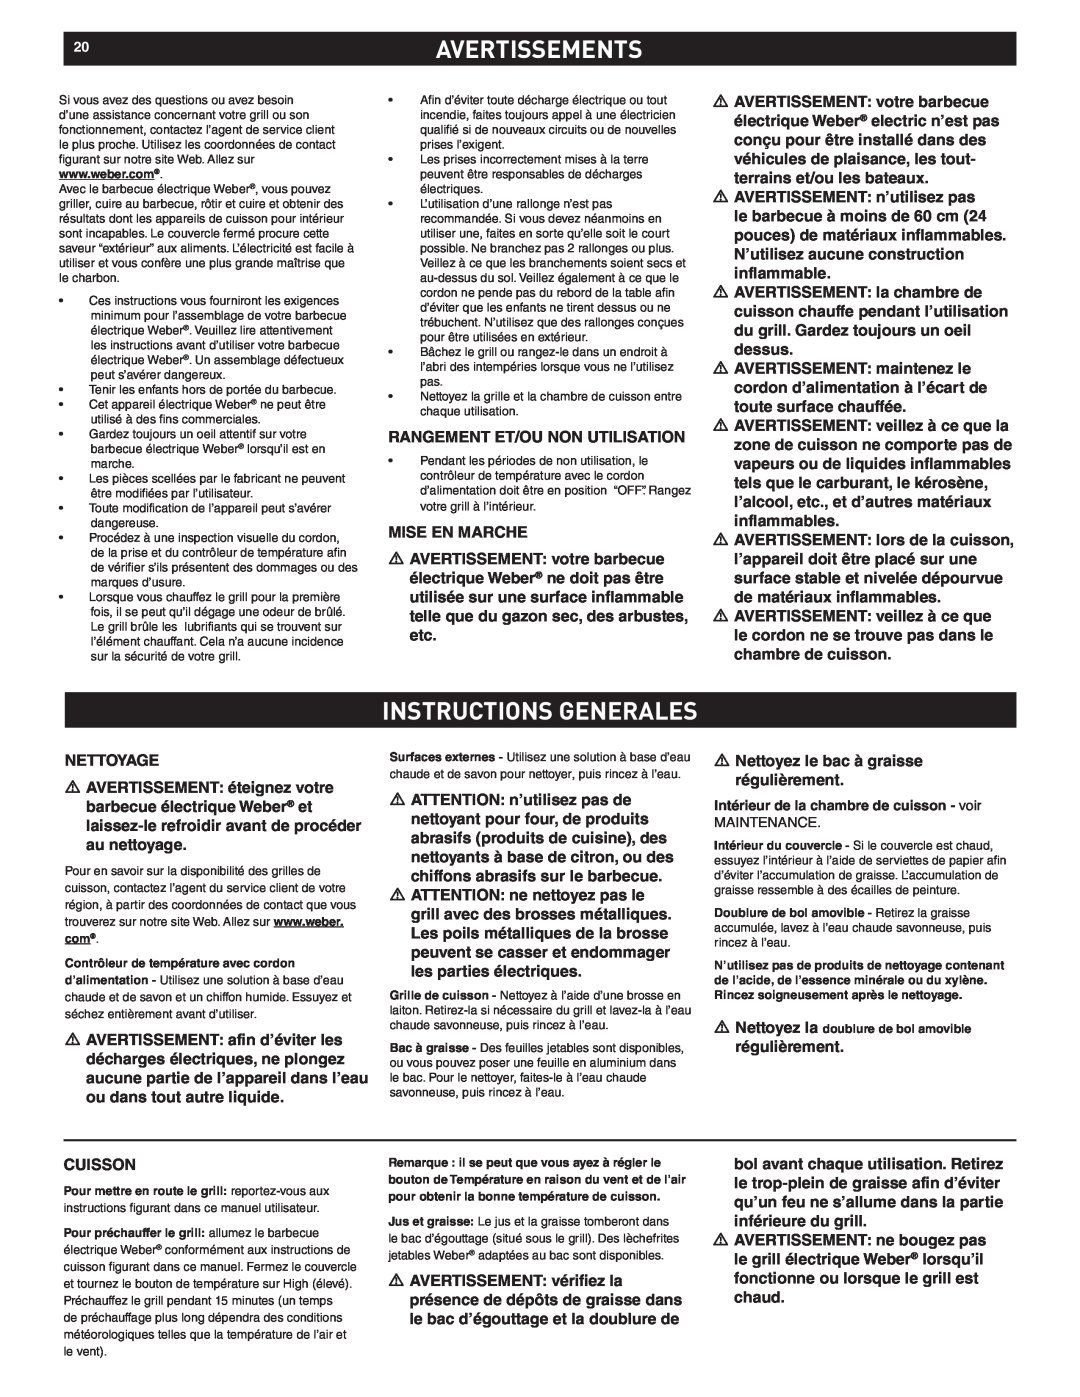 Weber Q 140 manual 20AVERTISSEMENTS, Instructions Generales, Intérieur de la chambre de cuisson - voir 